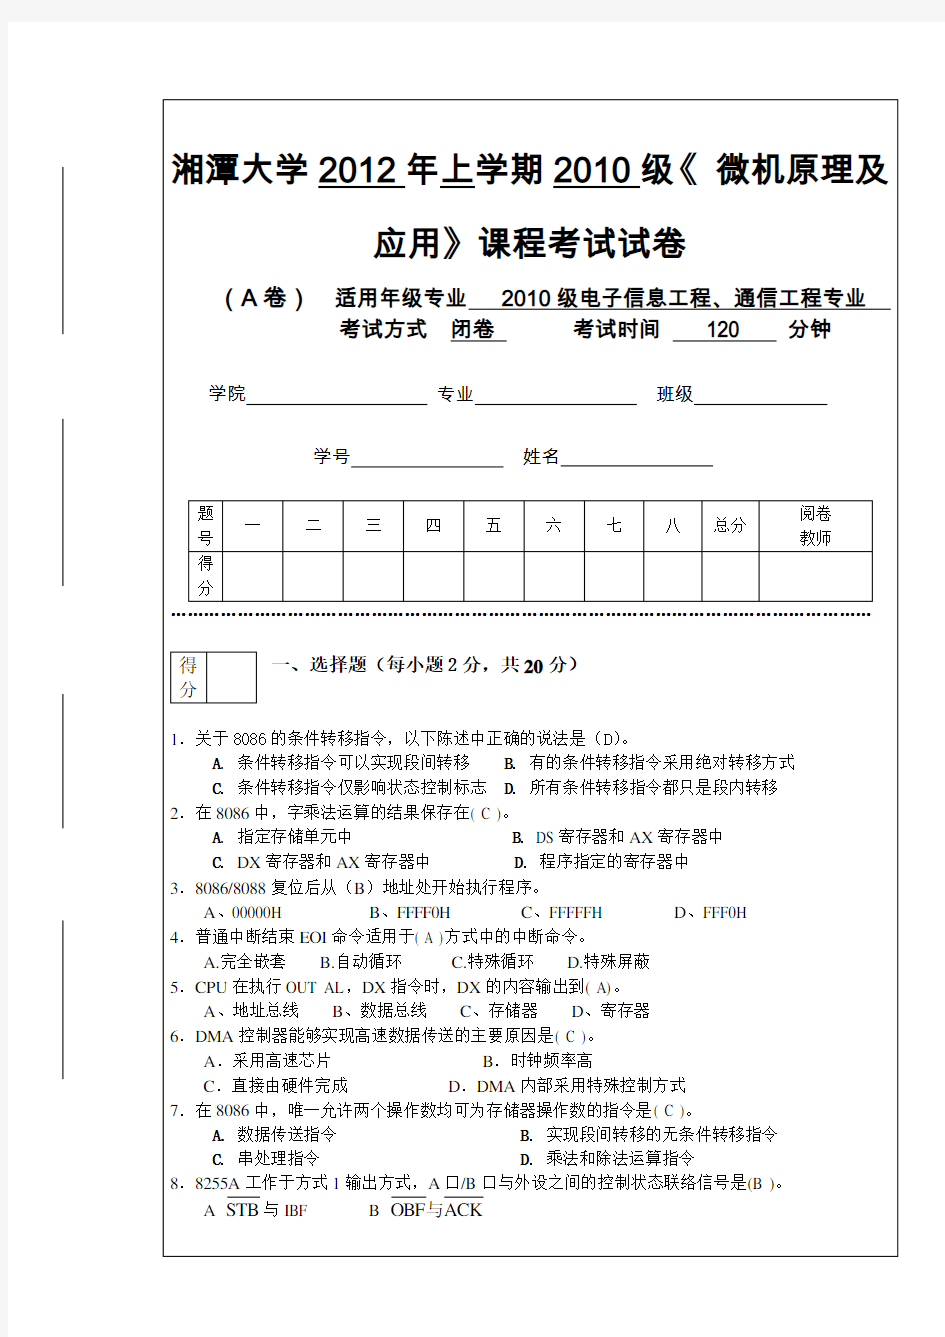 湘潭大学考试试卷标准格式2012(A)1